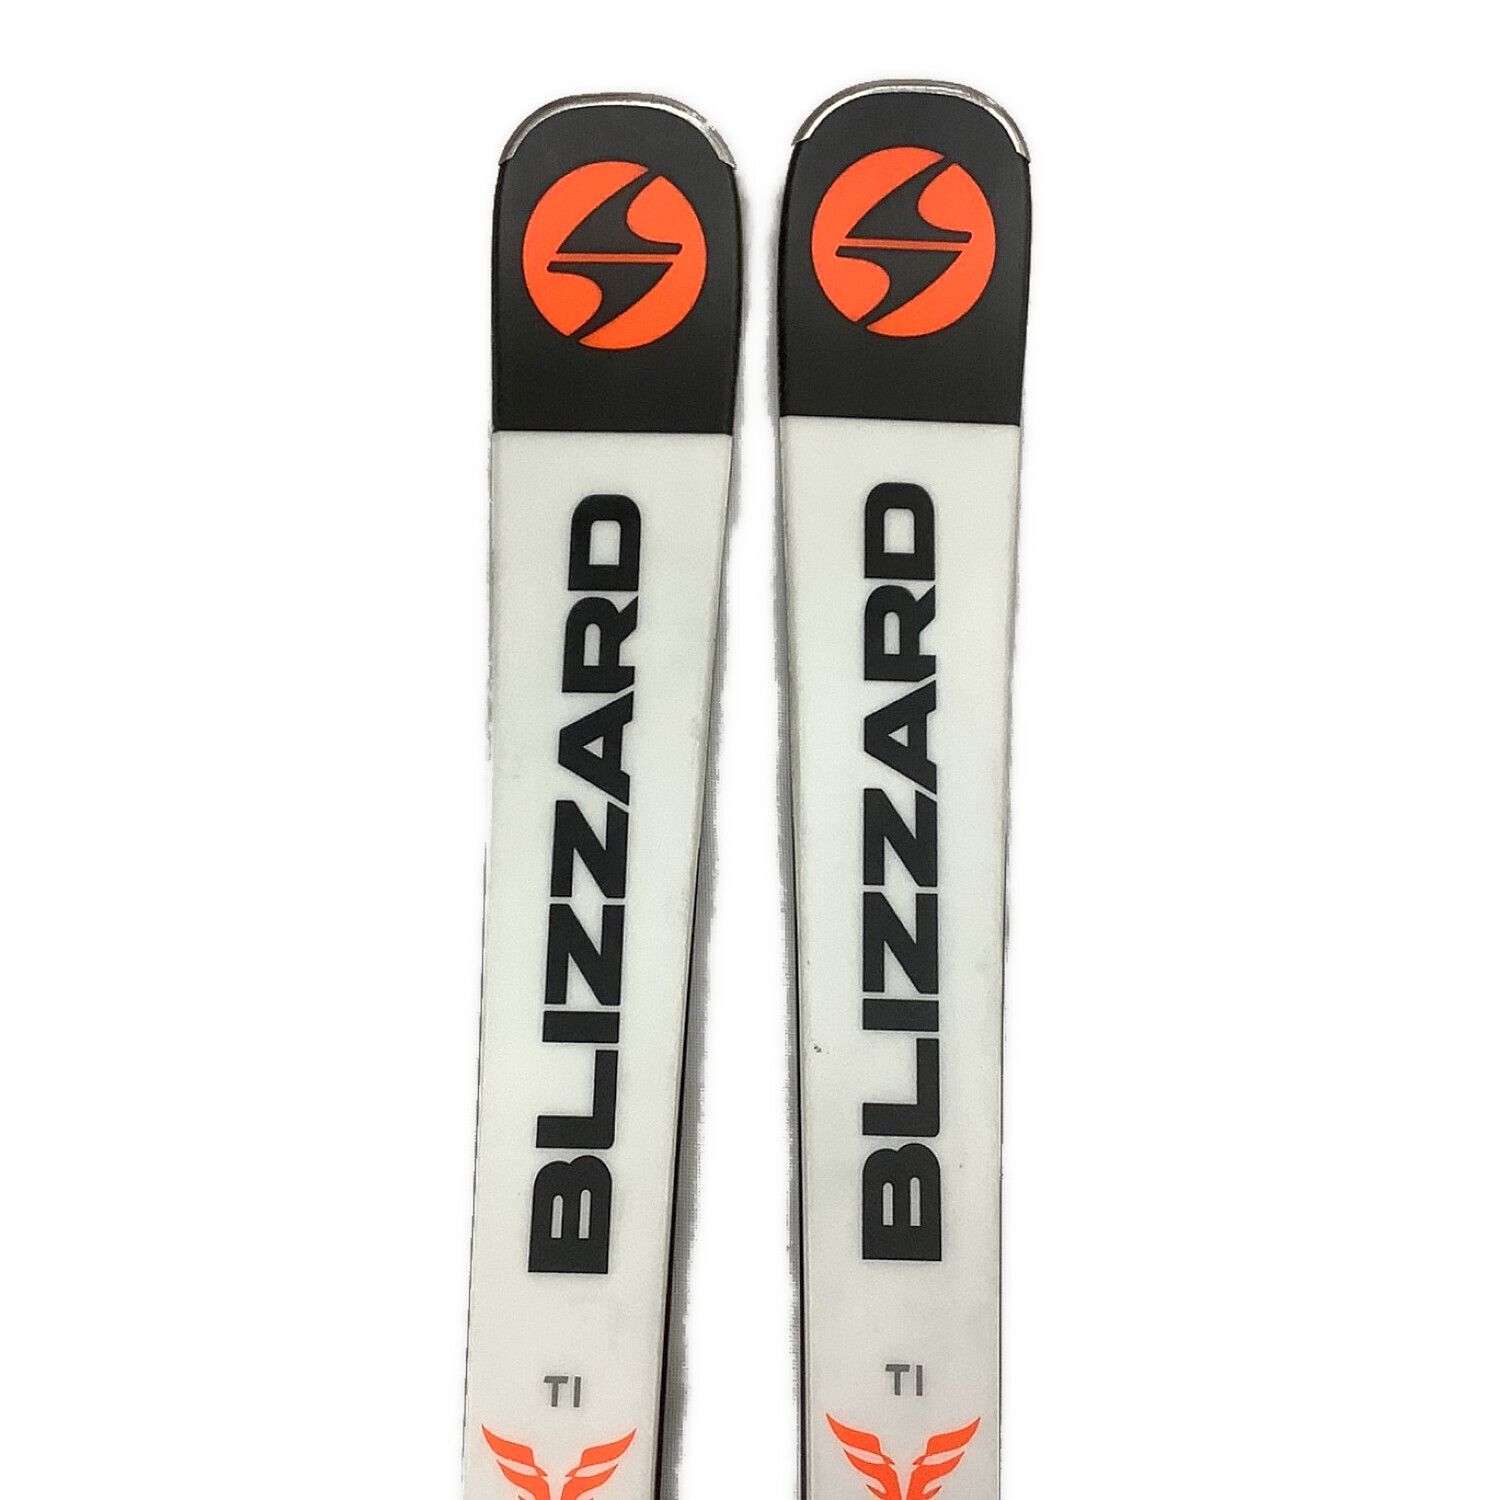 ◆ スキー Blizzard TG 3.21 160 カービングスキー スキー板